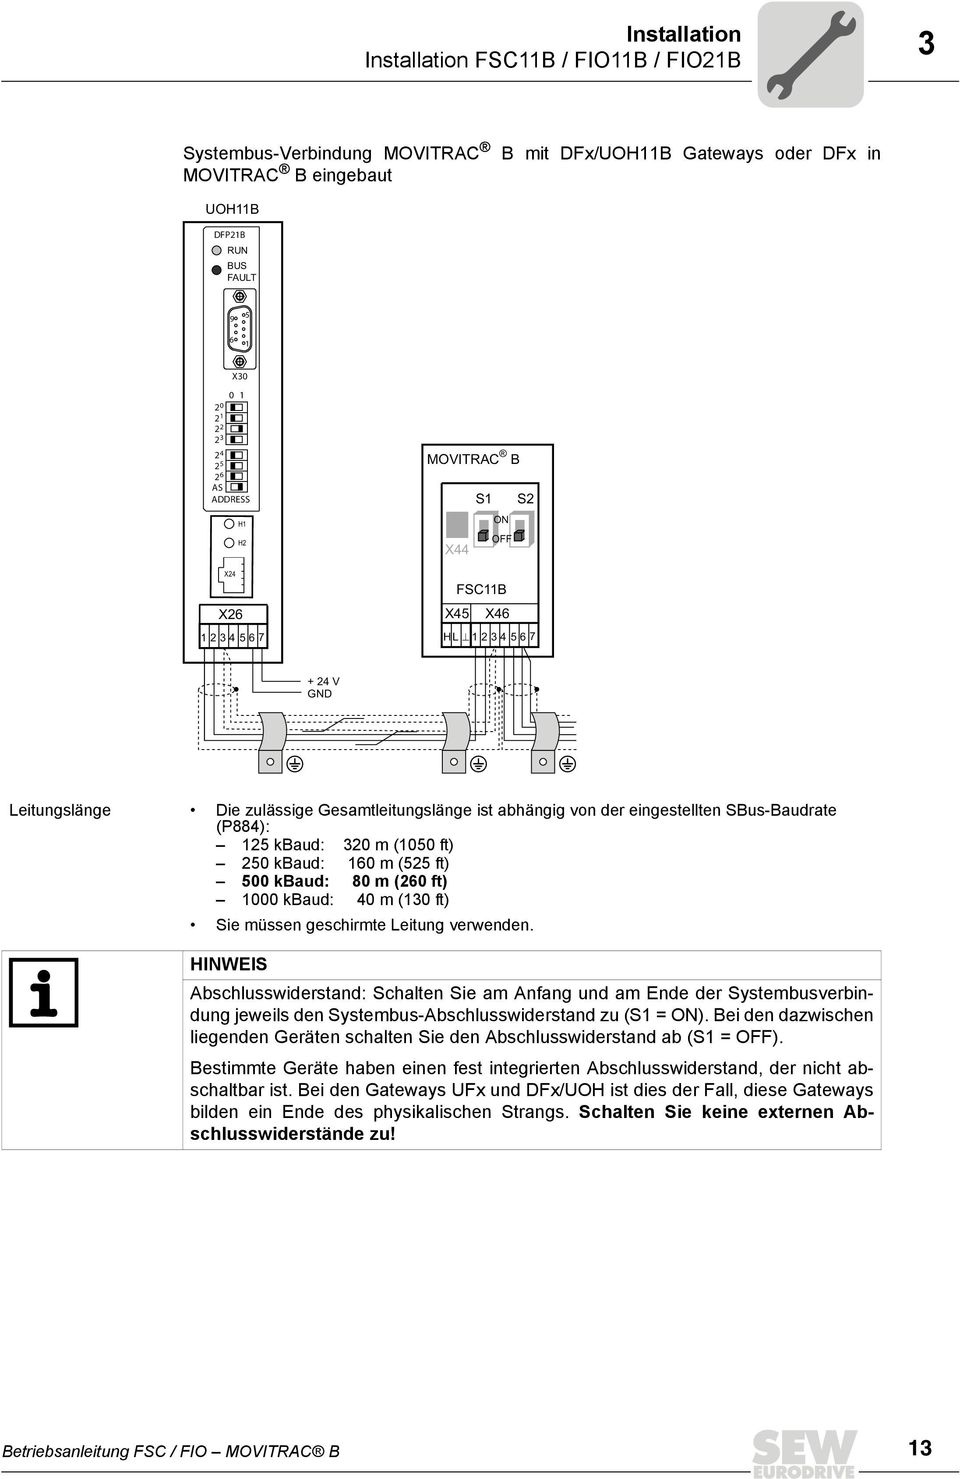 SBus-Baudrate (P884): 125 kbaud: 320 m (1050 ft) 250 kbaud: 160 m (525 ft) 500 kbaud: 80 m (260 ft) 1000 kbaud: 40 m (130 ft) Sie müssen geschirmte Leitung verwenden.